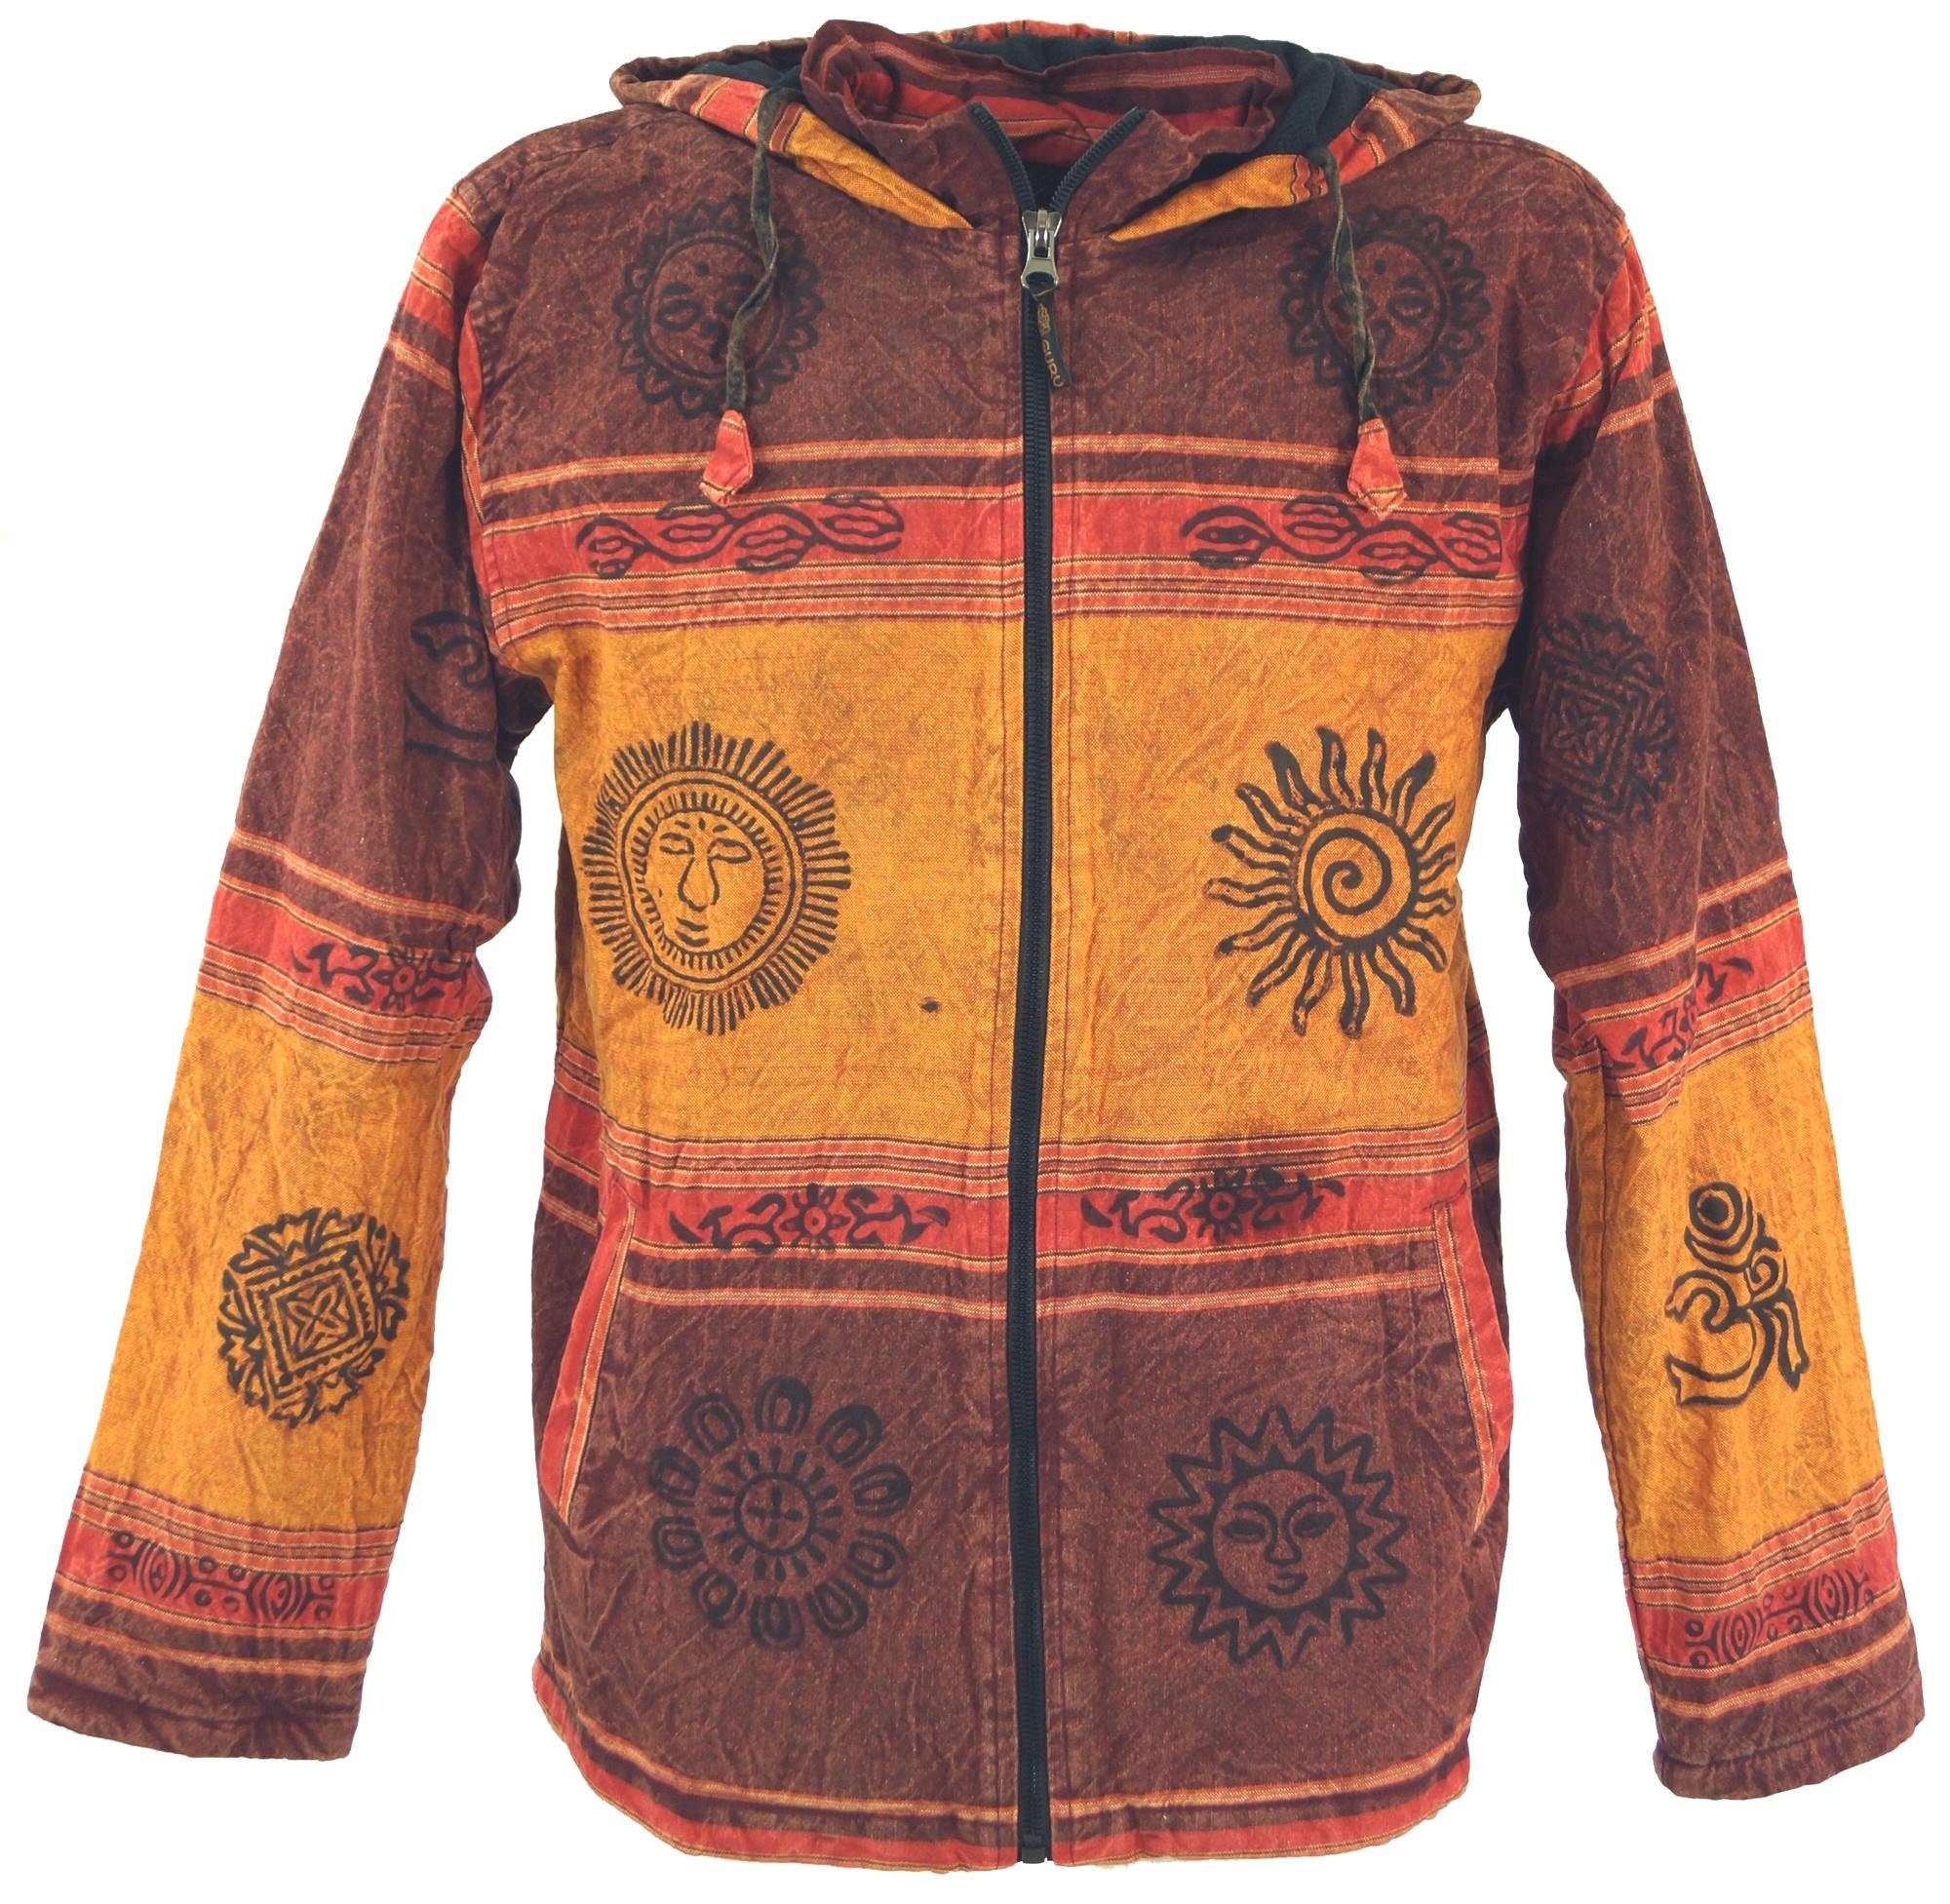 Guru-Shop Strickjacke Goa Jacke, Ethno Kapuzen Jacke - rostorange alternative Bekleidung